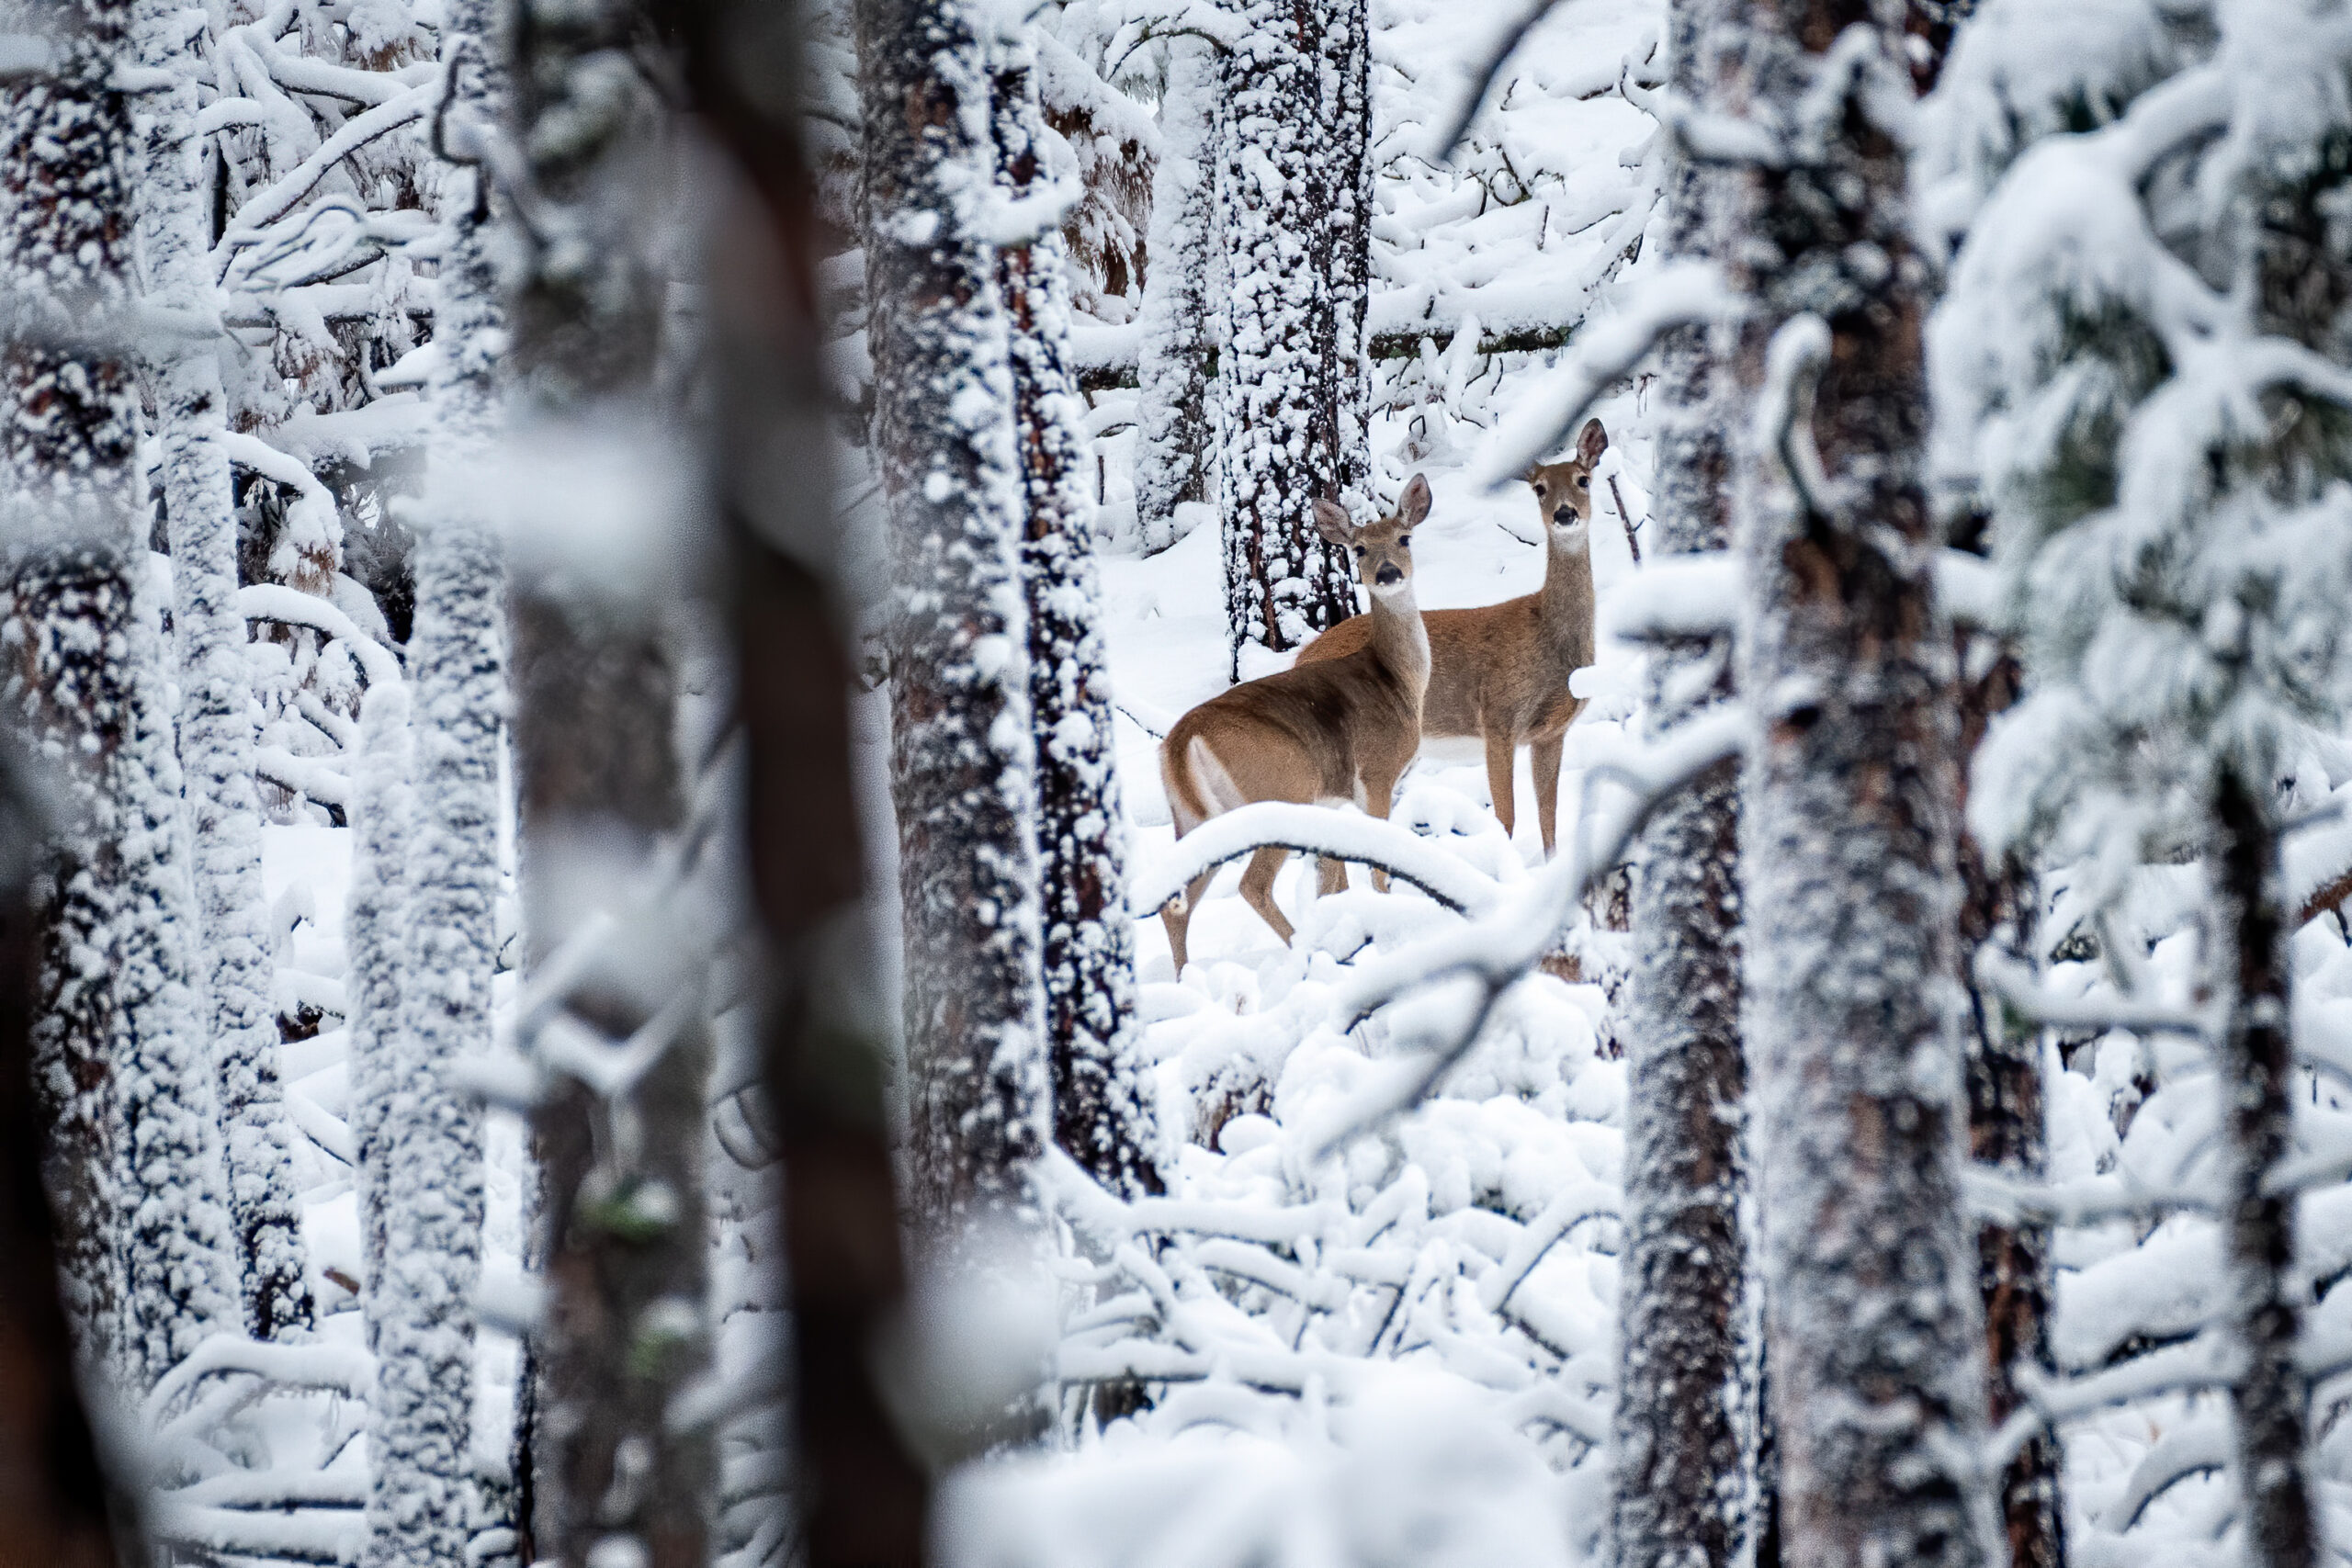 How deer and elk survive harsh, snowy winters